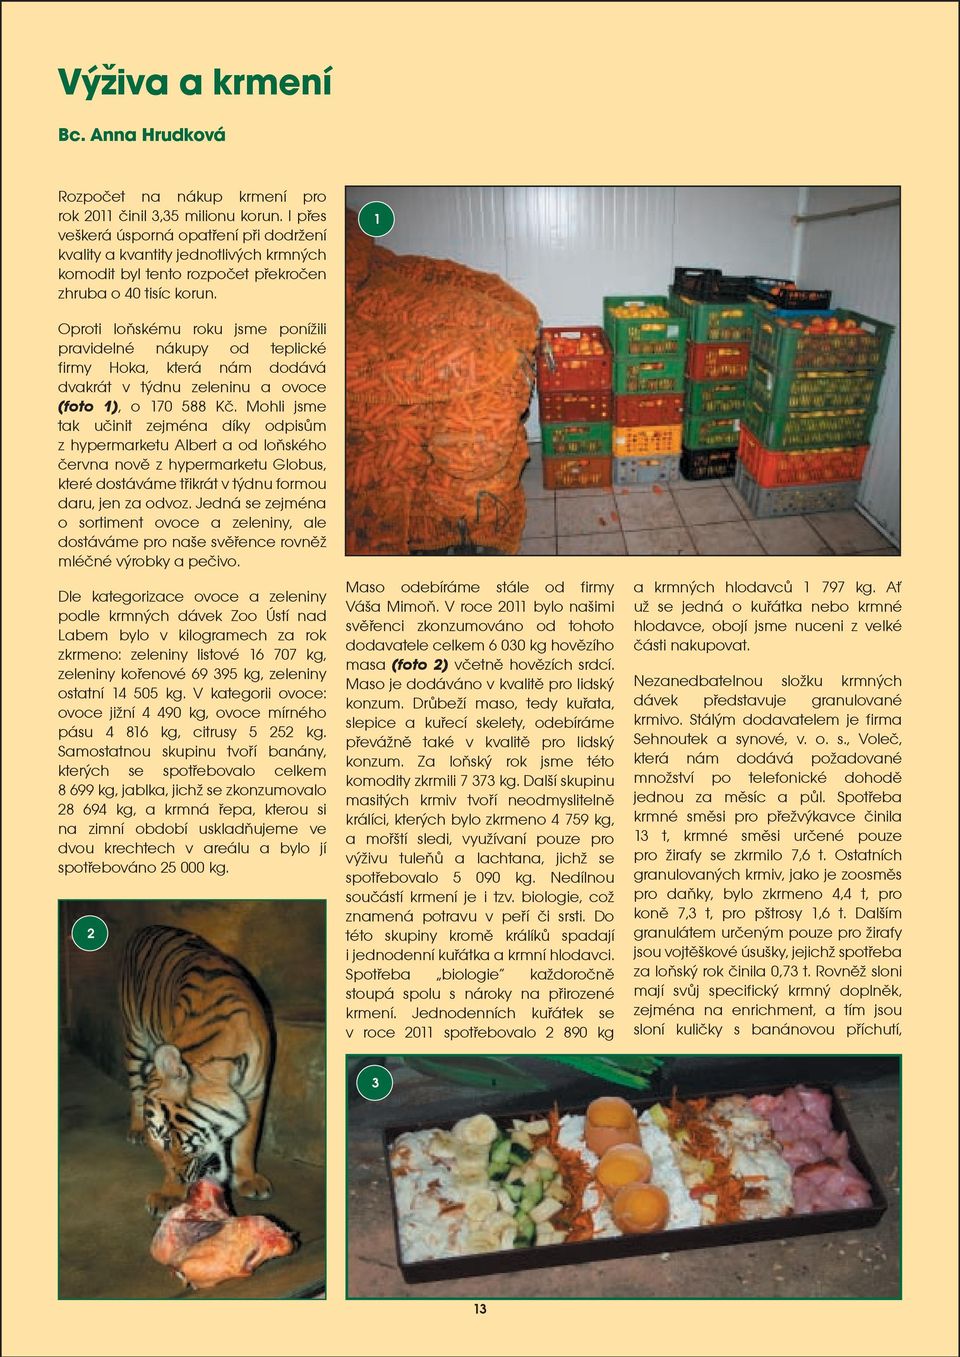 Oproti loòskému roku jsme poníili pravidelné nákupy od teplické firmy Hoka, která nám dodává dvakrát v týdnu zeleninu a ovoce (foto 1), o 170 588 Kè.